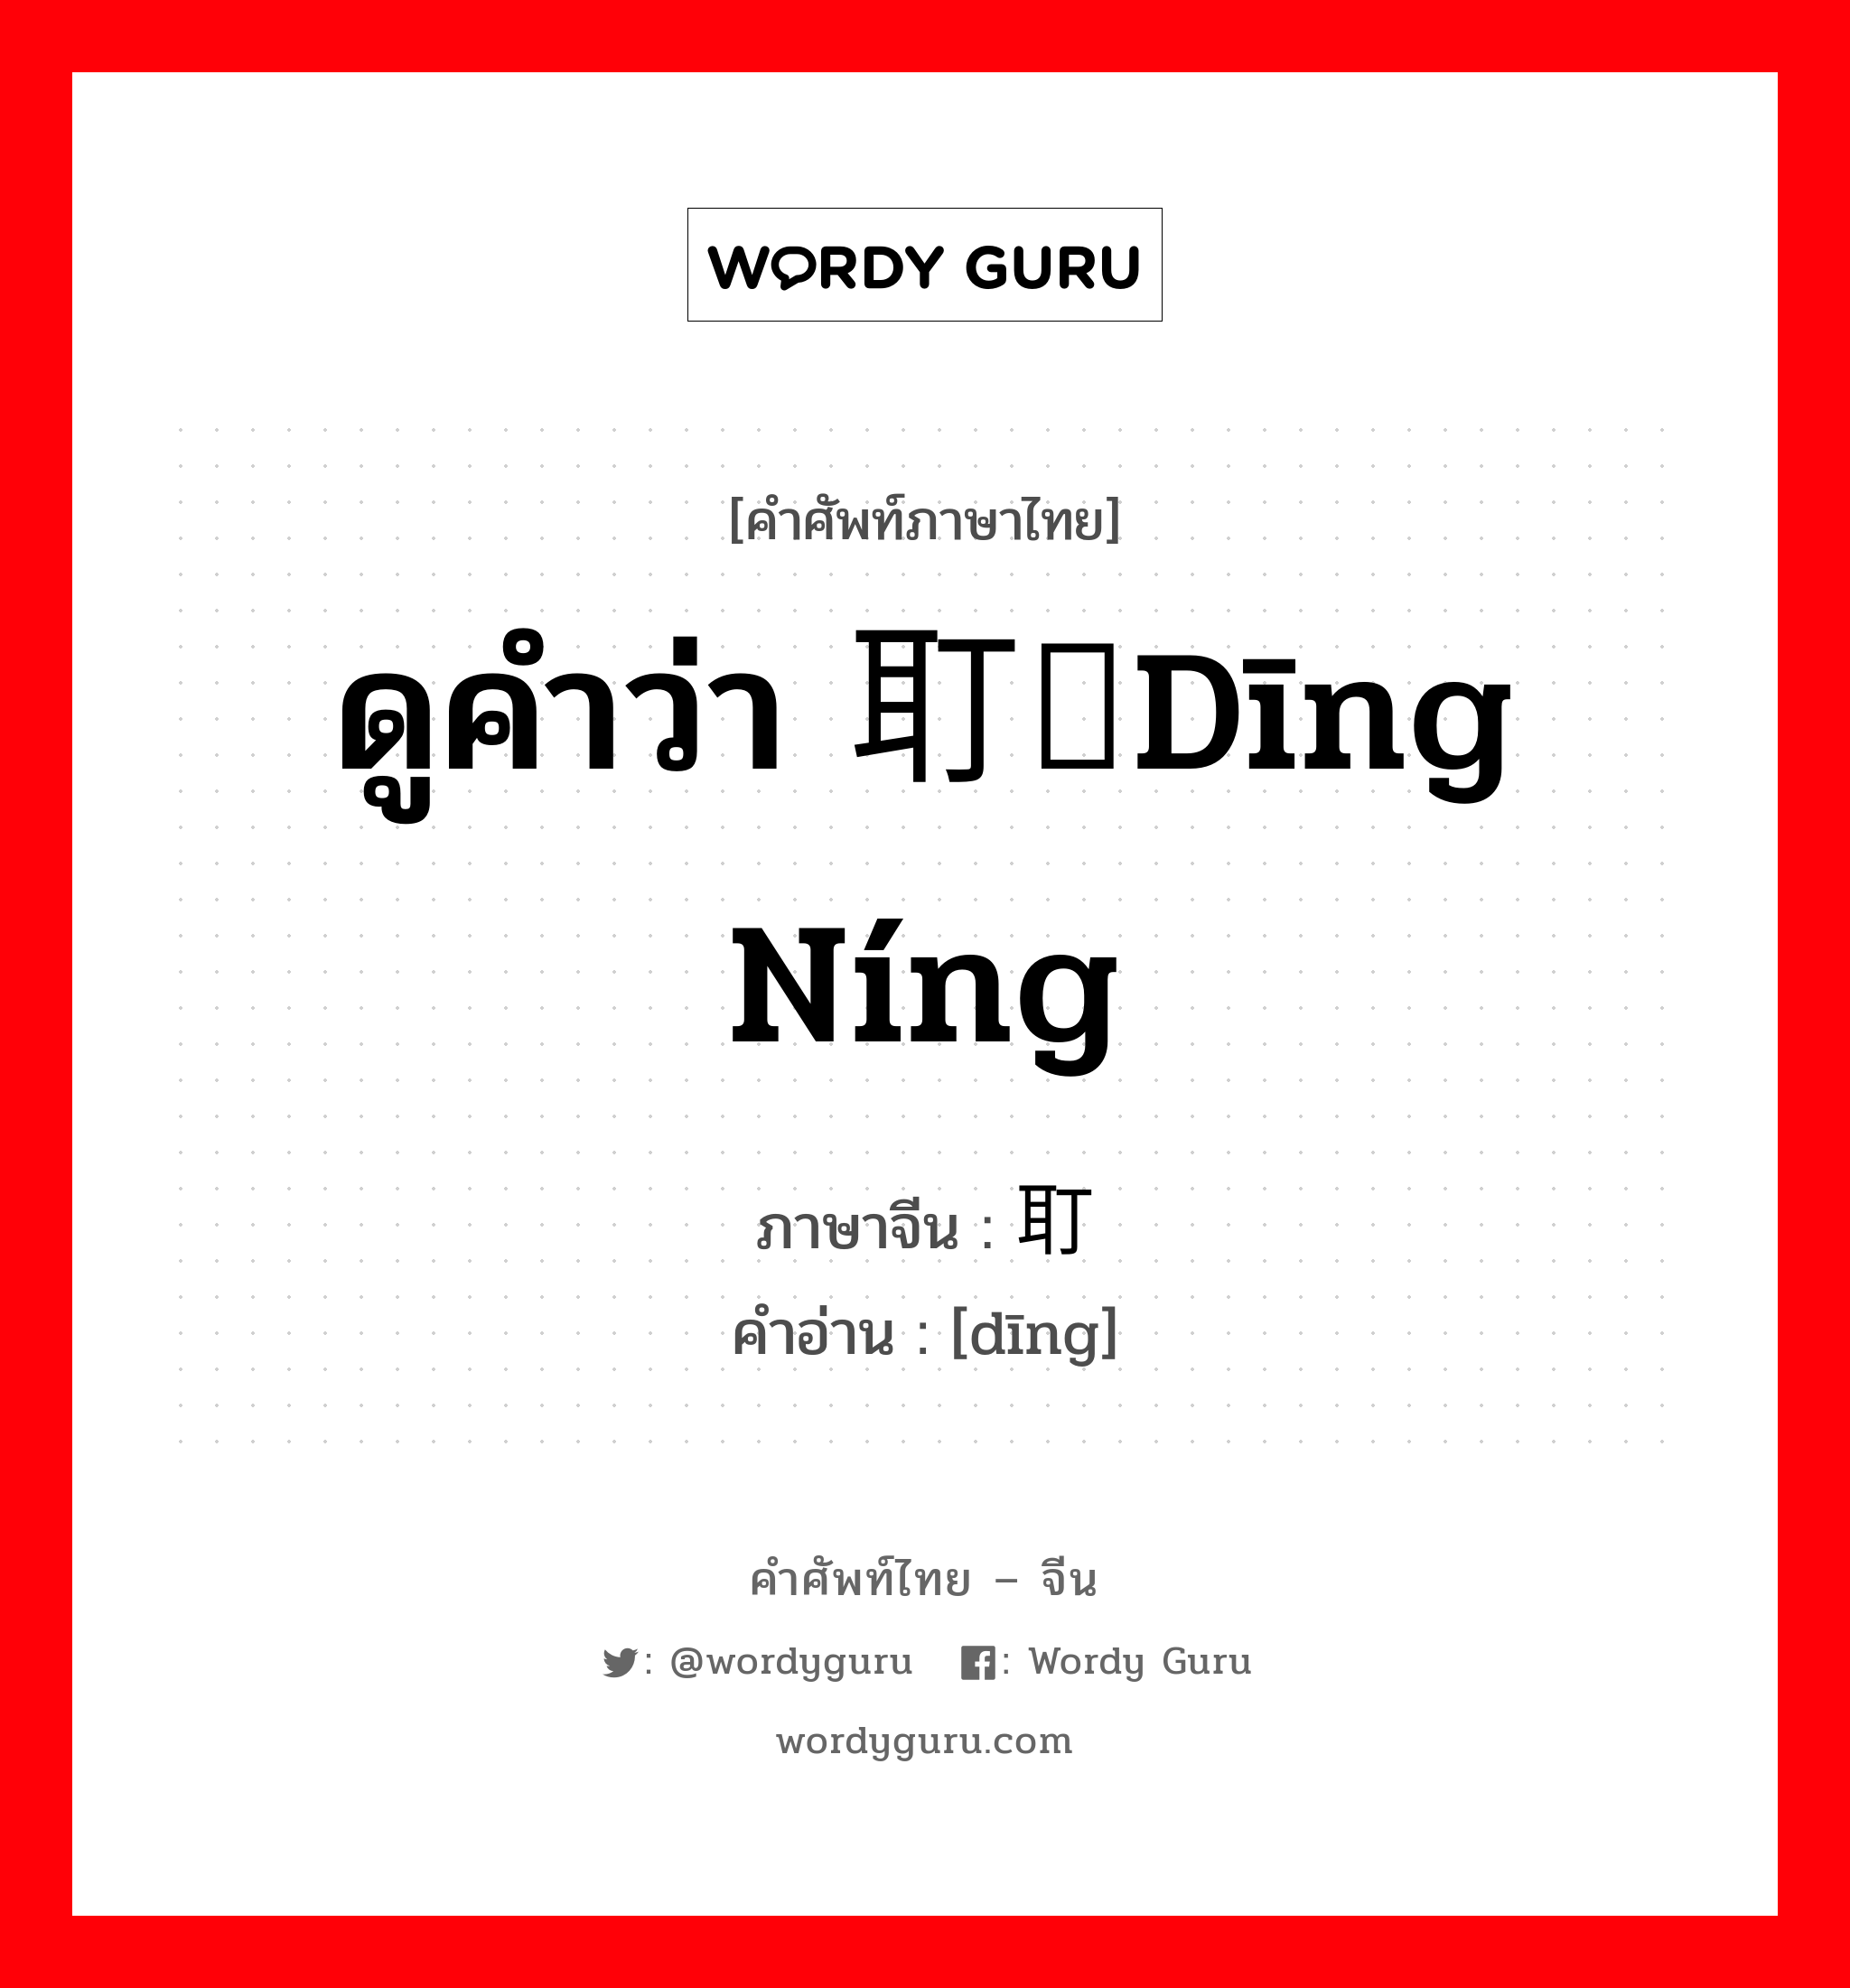 耵 ภาษาไทย?, คำศัพท์ภาษาไทย - จีน 耵 ภาษาจีน ดูคำว่า 耵聍dīng níng คำอ่าน [dīng]